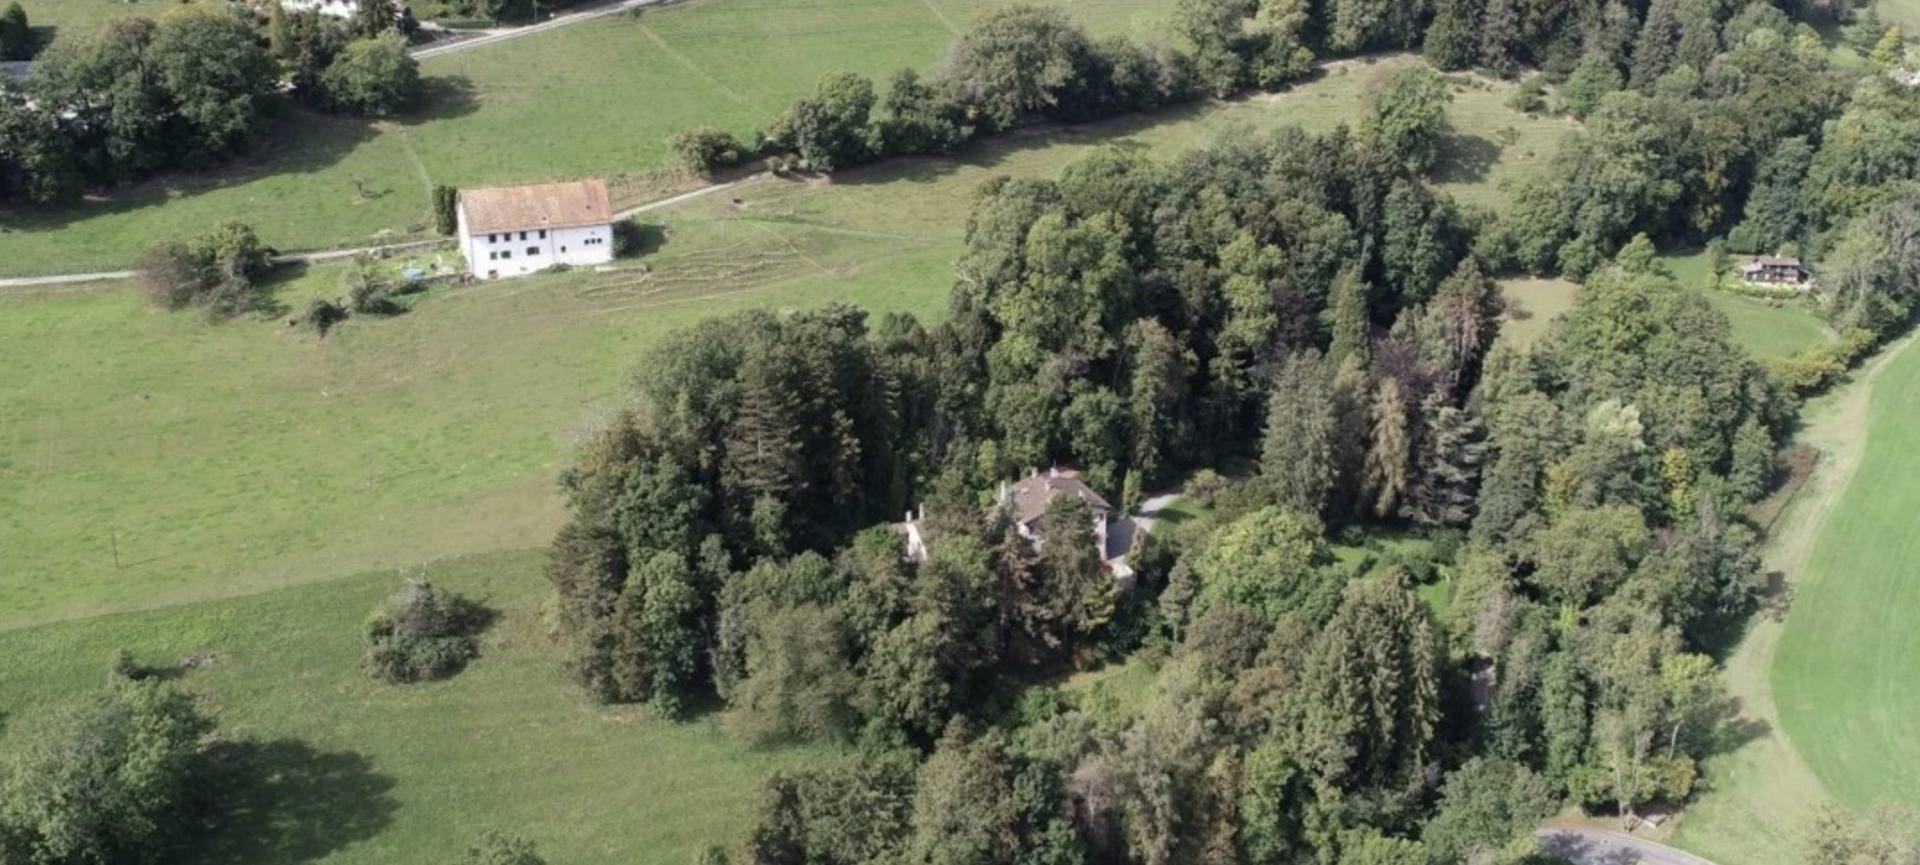 Le domaine de la Grant Part, au-dessus de Vevey, abrite le monastère des clarisses | © grantpart.ch